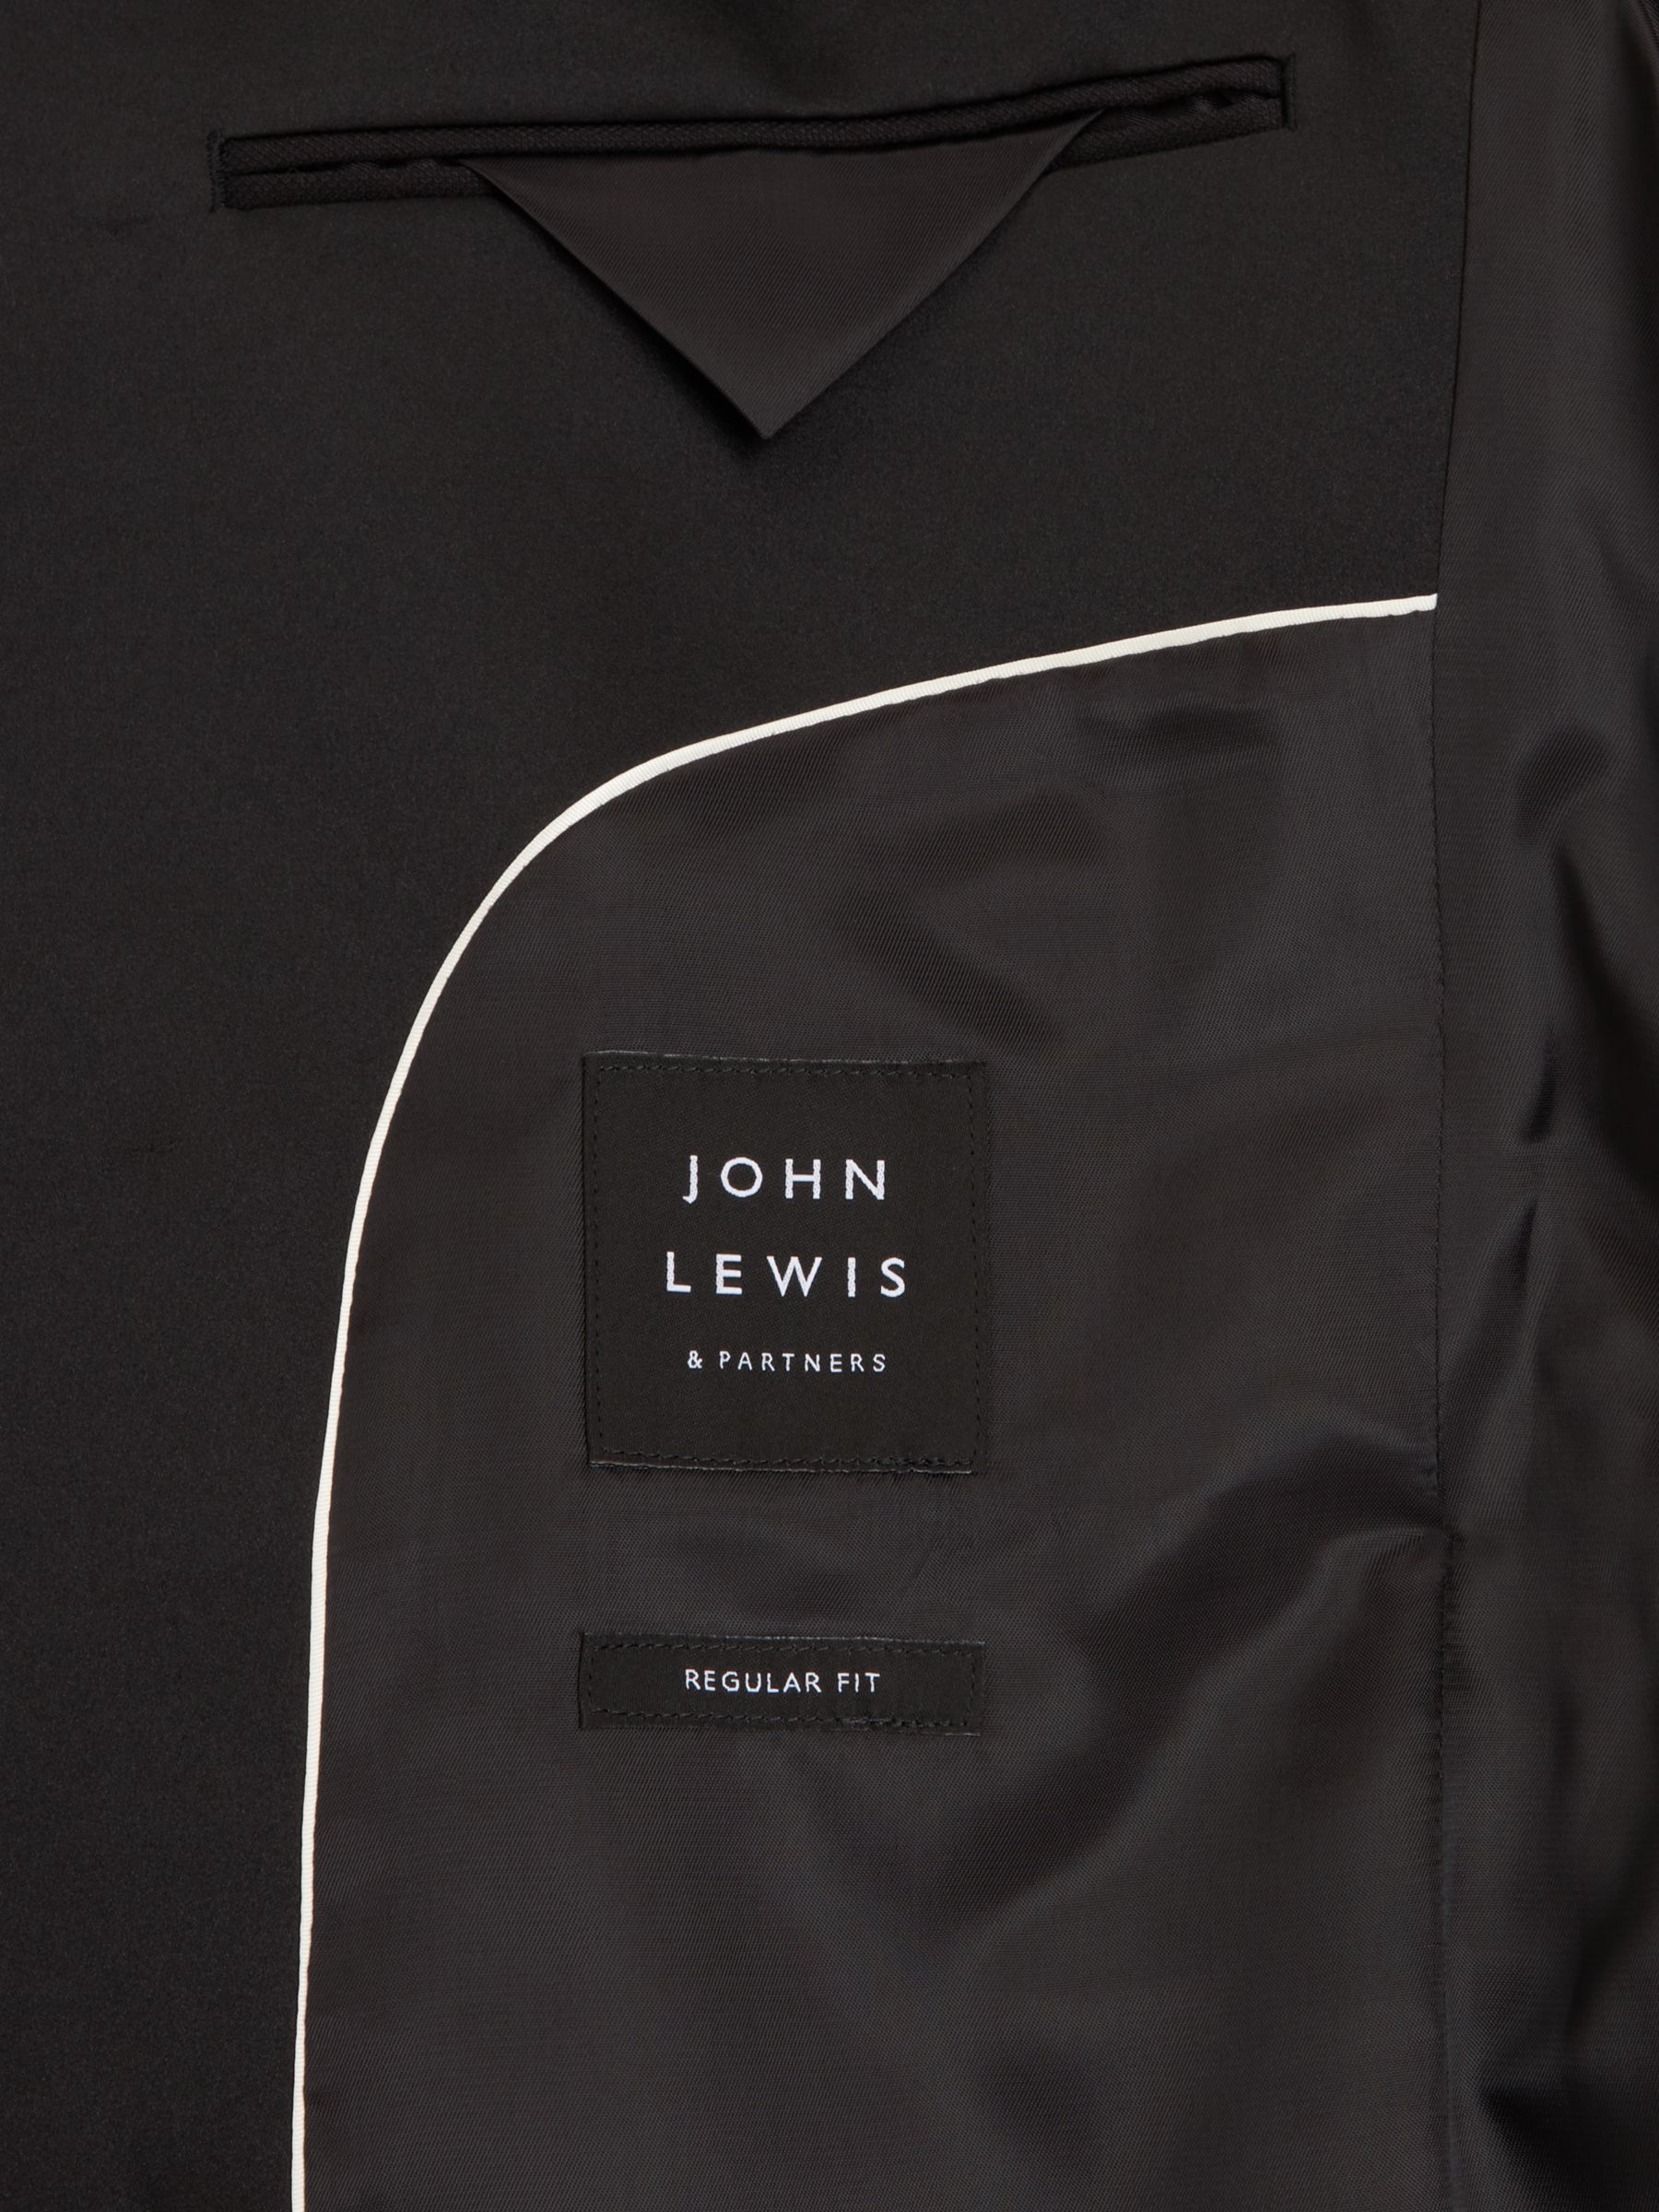 John Lewis Double Breasted Wool Regular Fit Dinner Jacket, Black, 40R